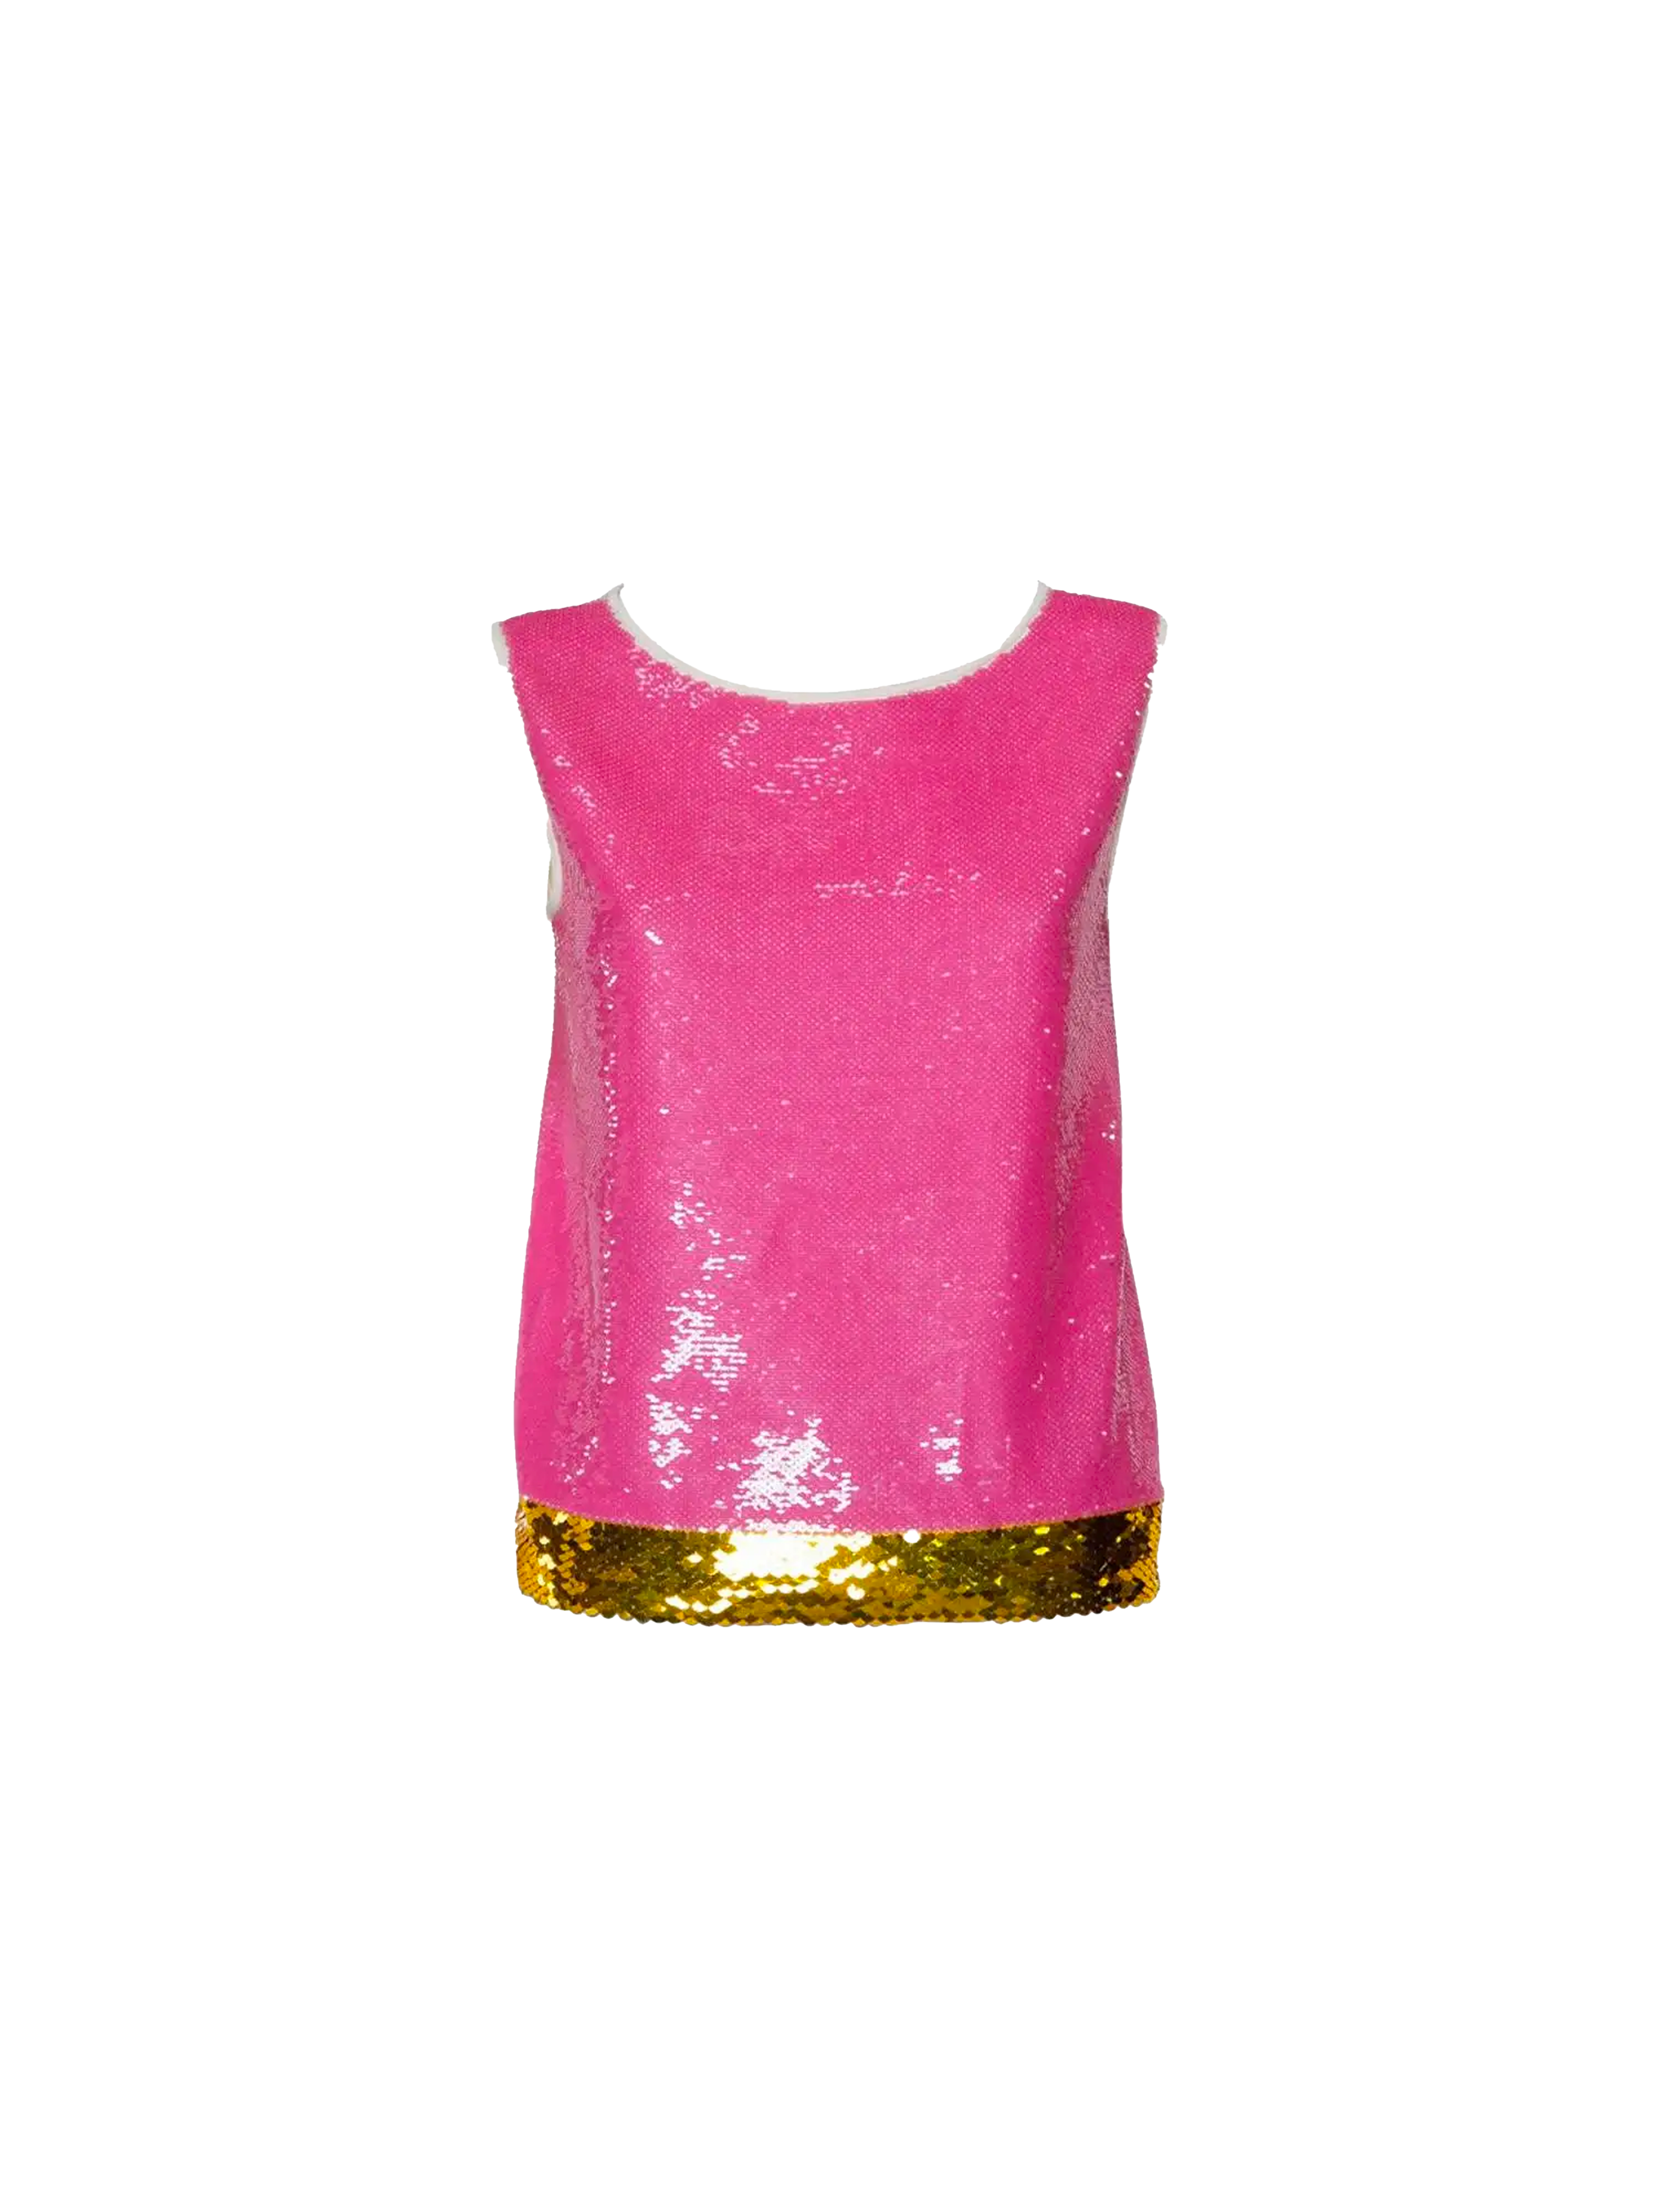 Prada 2010s Pink Sequin Top with Gold Hem